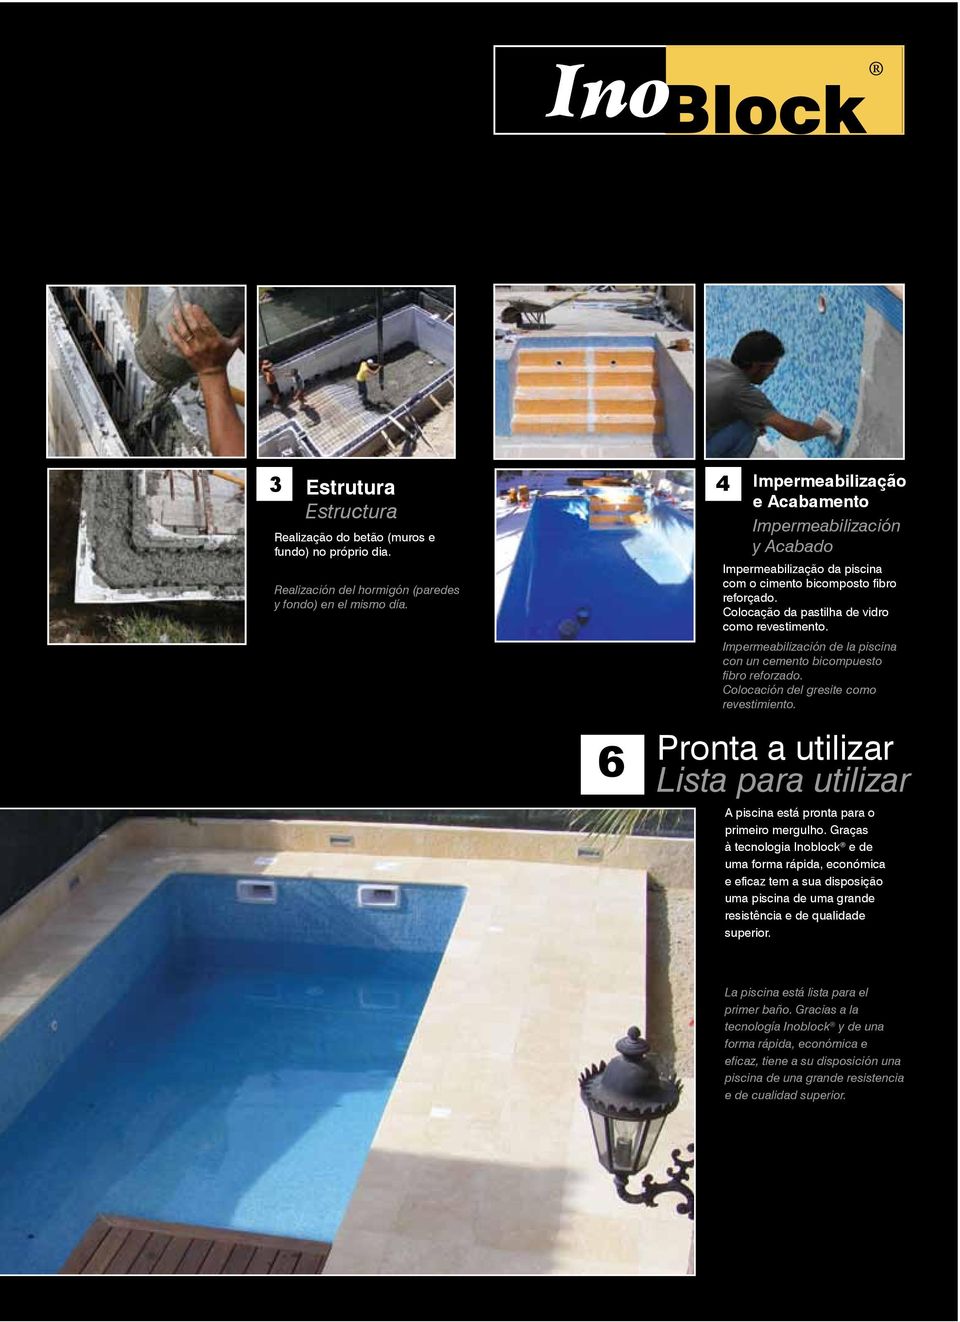 Impermeabilización de la piscina con un cemento bicompuesto fibro reforzado. Colocación del gresite como revestimiento.